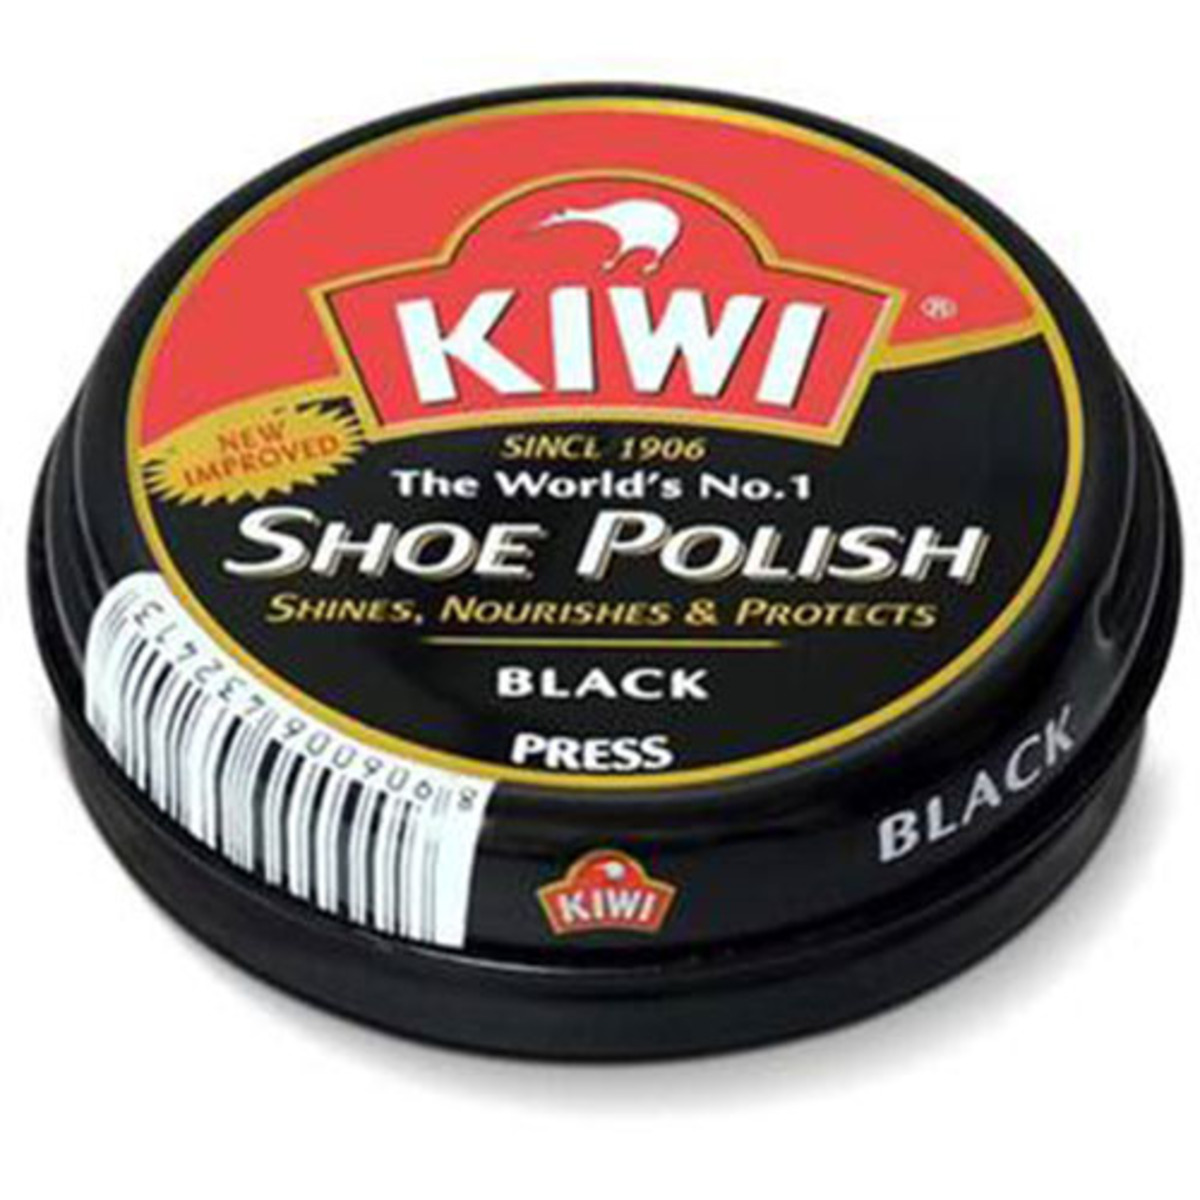 Kiwi Shoe Polish Black 15g